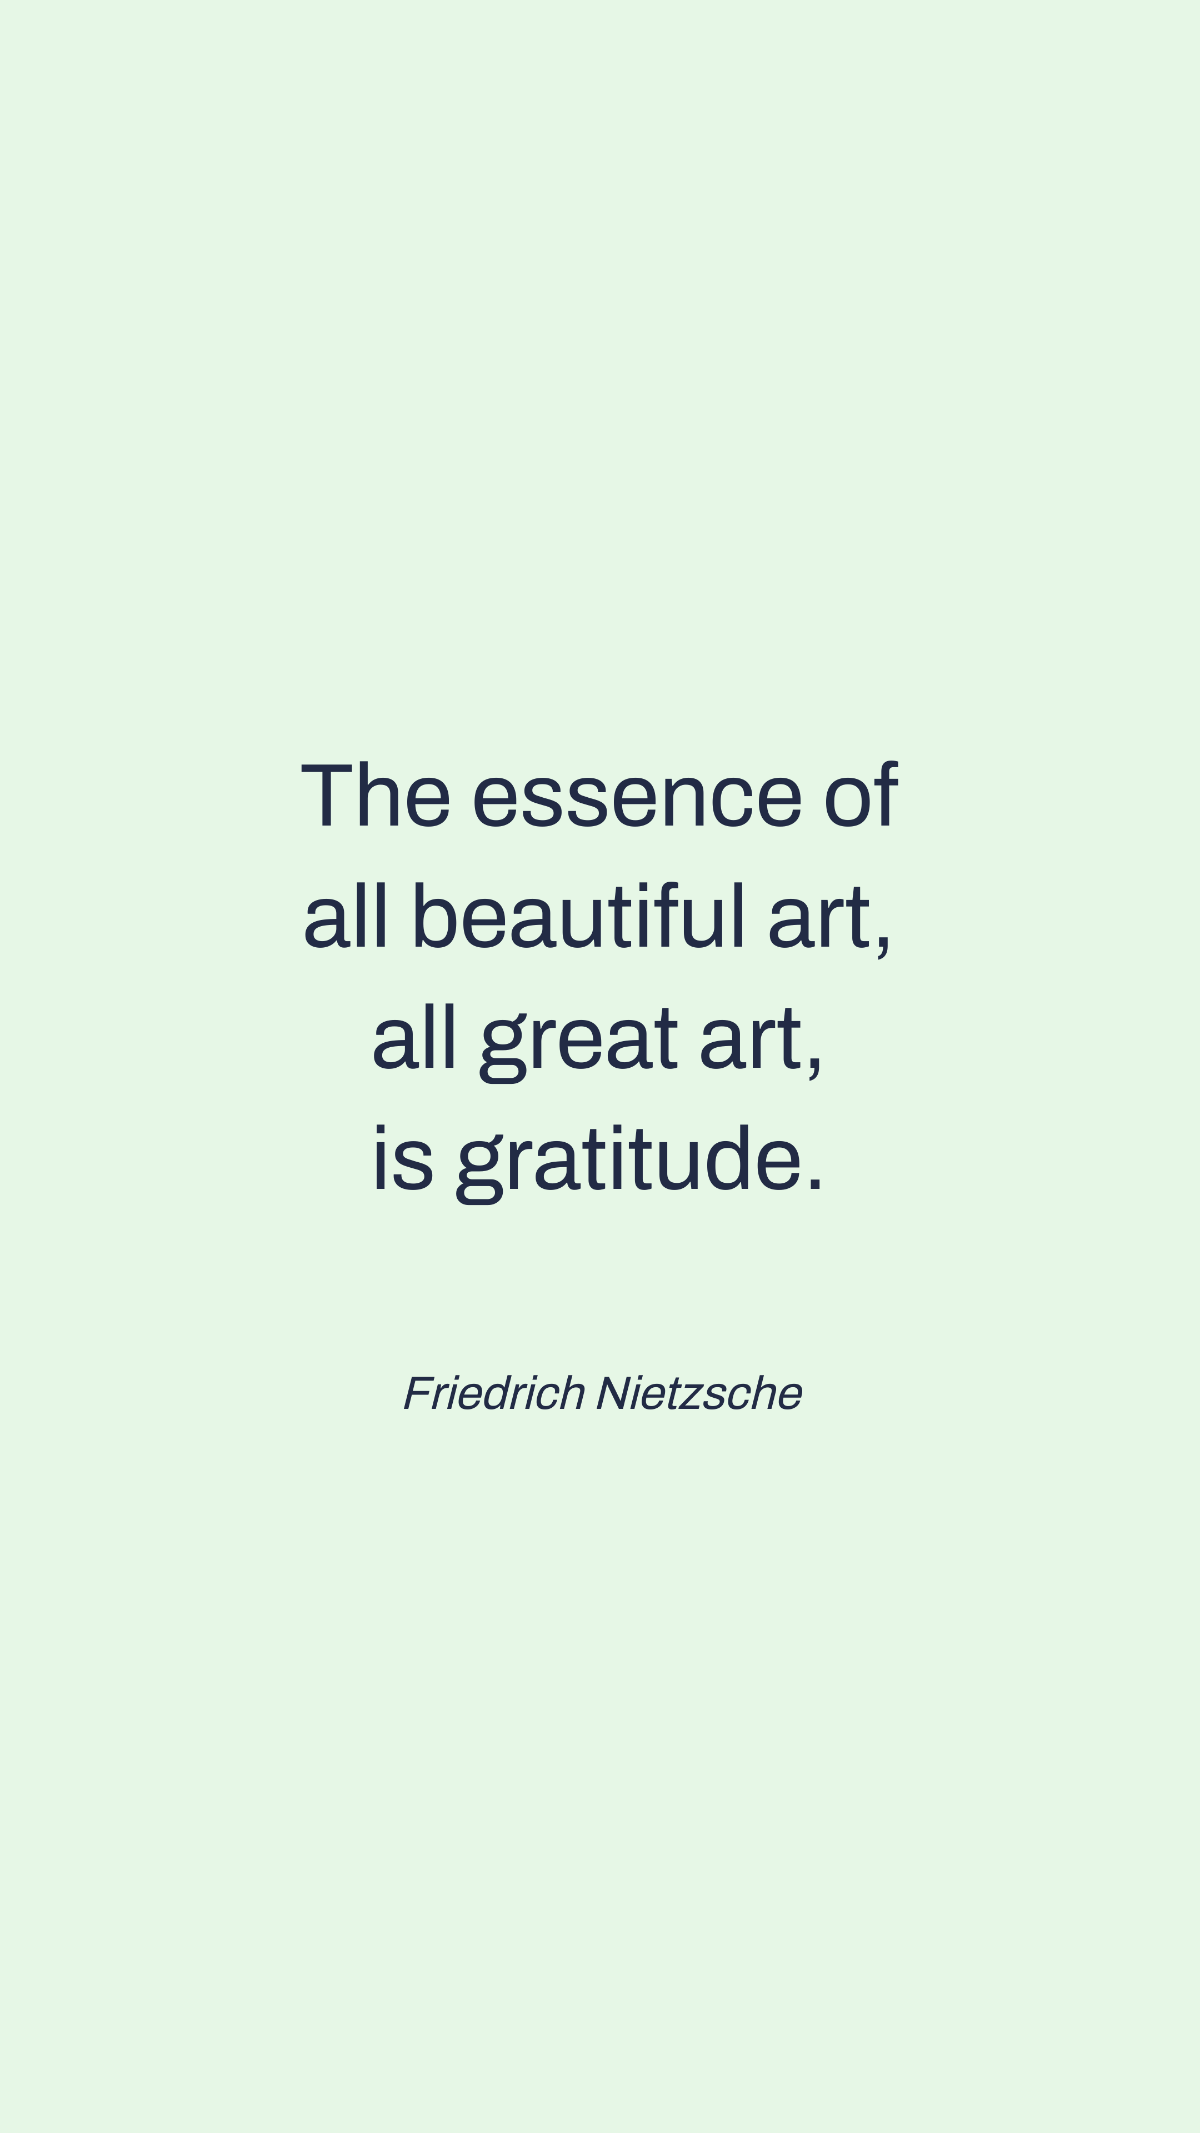 Friedrich Nietzsche - The essence of all beautiful art, all great art, is gratitude. Template